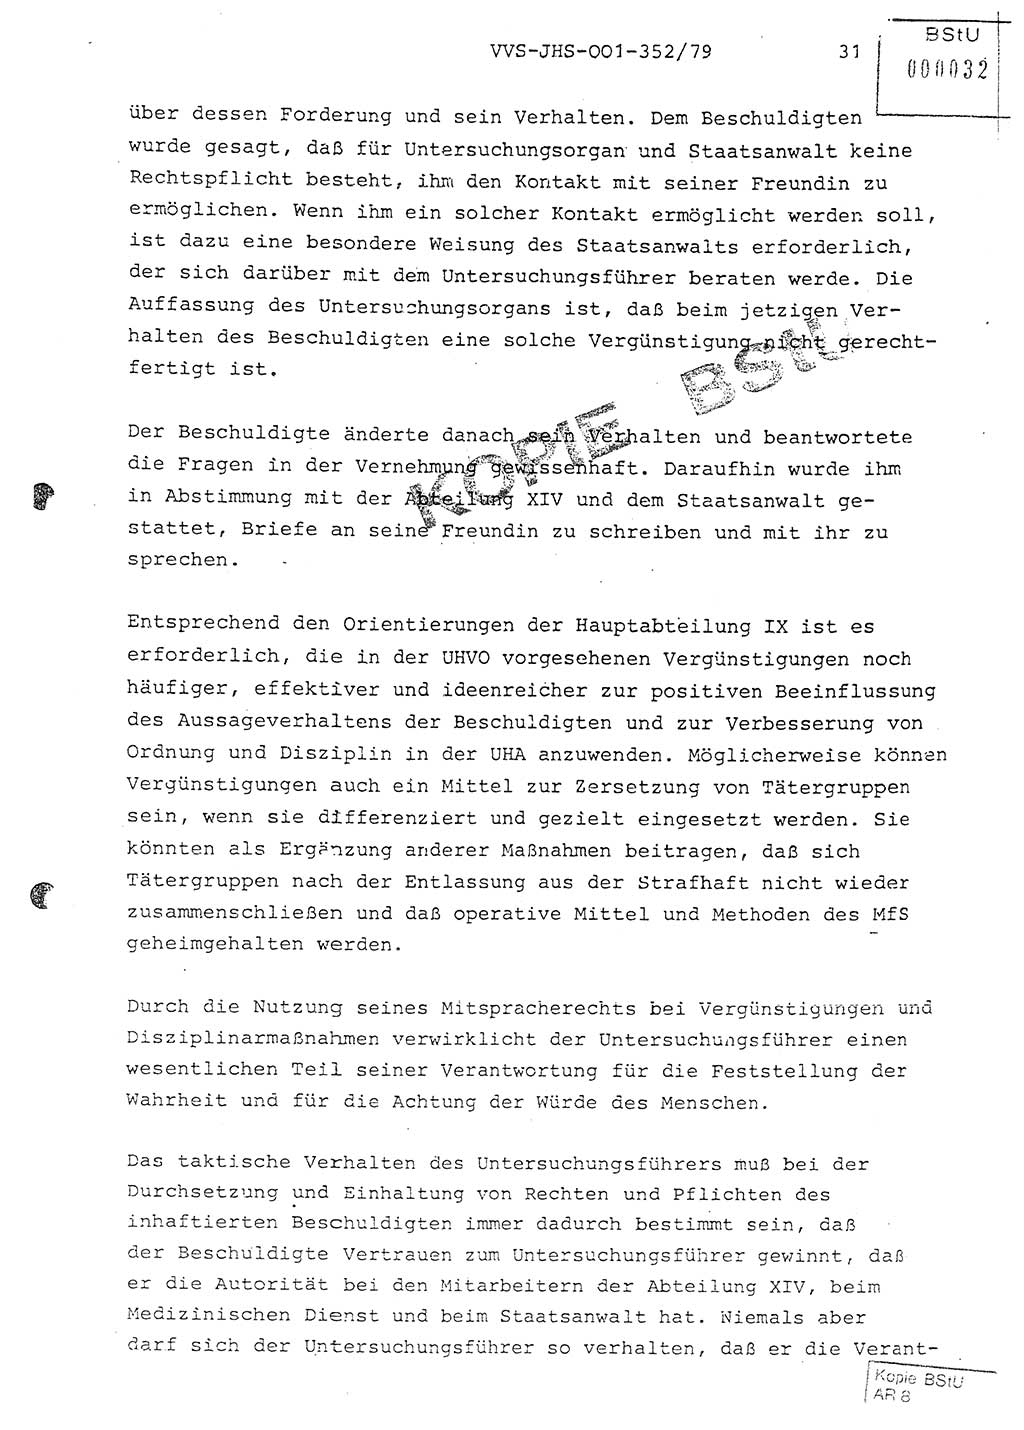 Diplomarbeit Hauptmann Peter Wittum (BV Bln. Abt. HA Ⅸ), Ministerium für Staatssicherheit (MfS) [Deutsche Demokratische Republik (DDR)], Juristische Hochschule (JHS), Vertrauliche Verschlußsache (VVS) o001-352/79, Potsdam 1979, Seite 31 (Dipl.-Arb. MfS DDR JHS VVS o001-352/79 1979, S. 31)